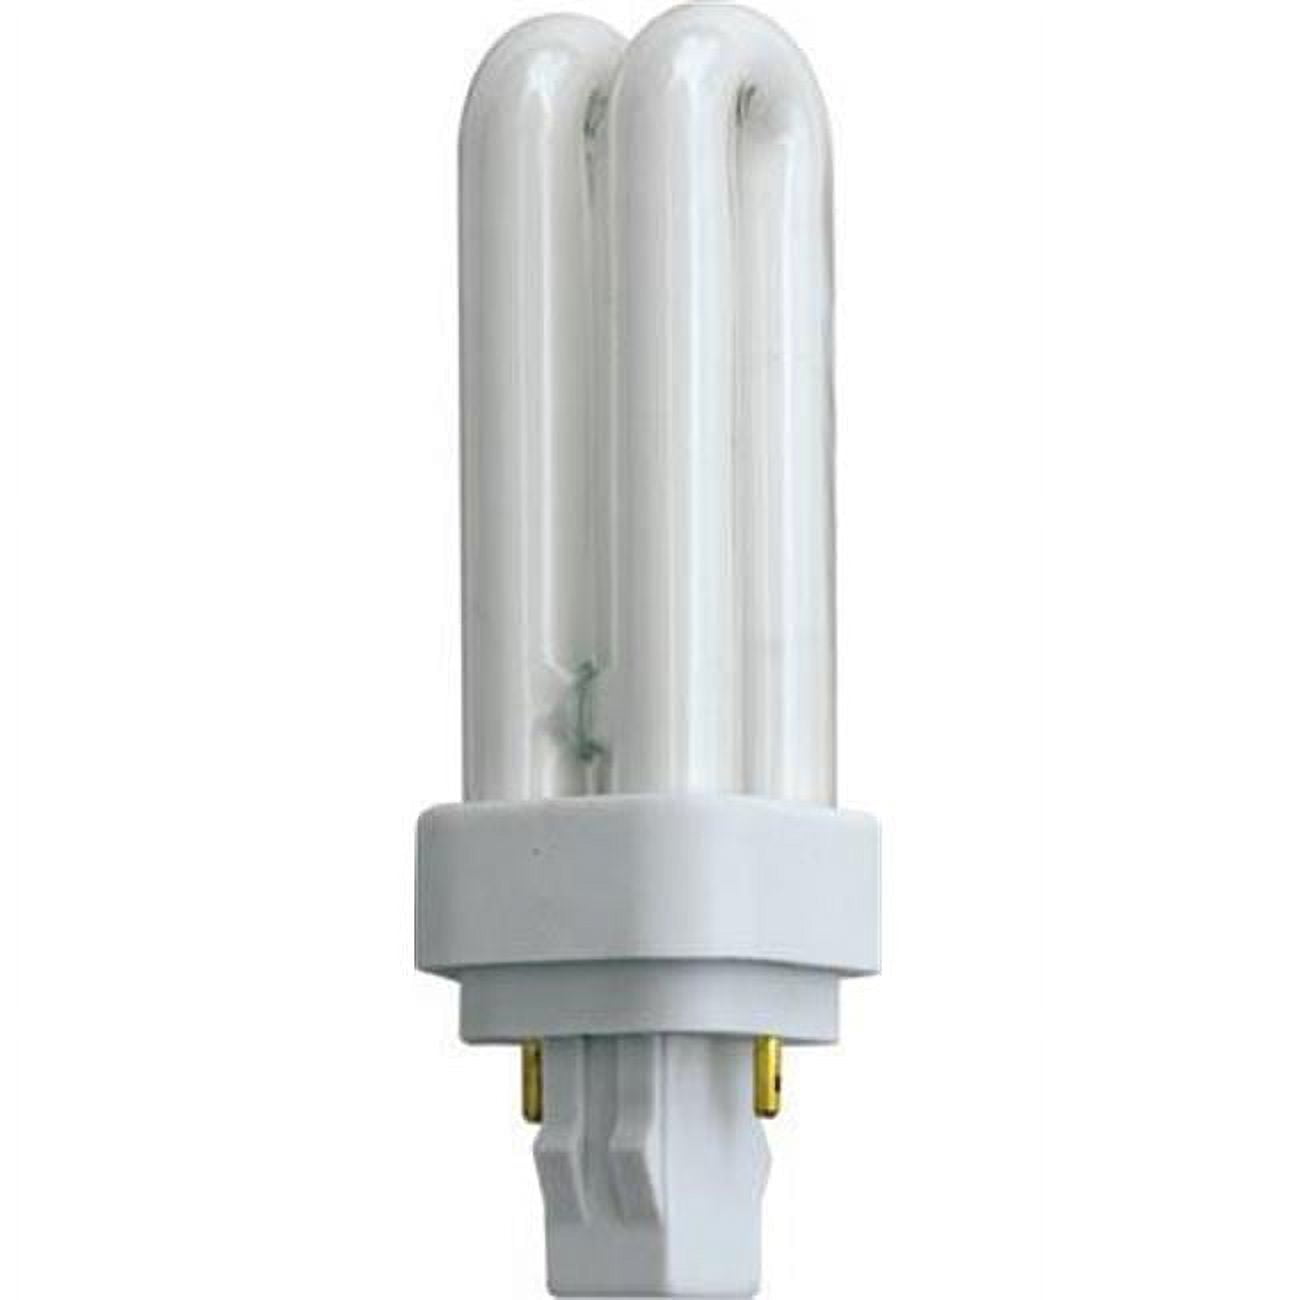 Dl-q13-27k Plq13 2 Pin 13 Watt 27k Flourescent Lamp, White